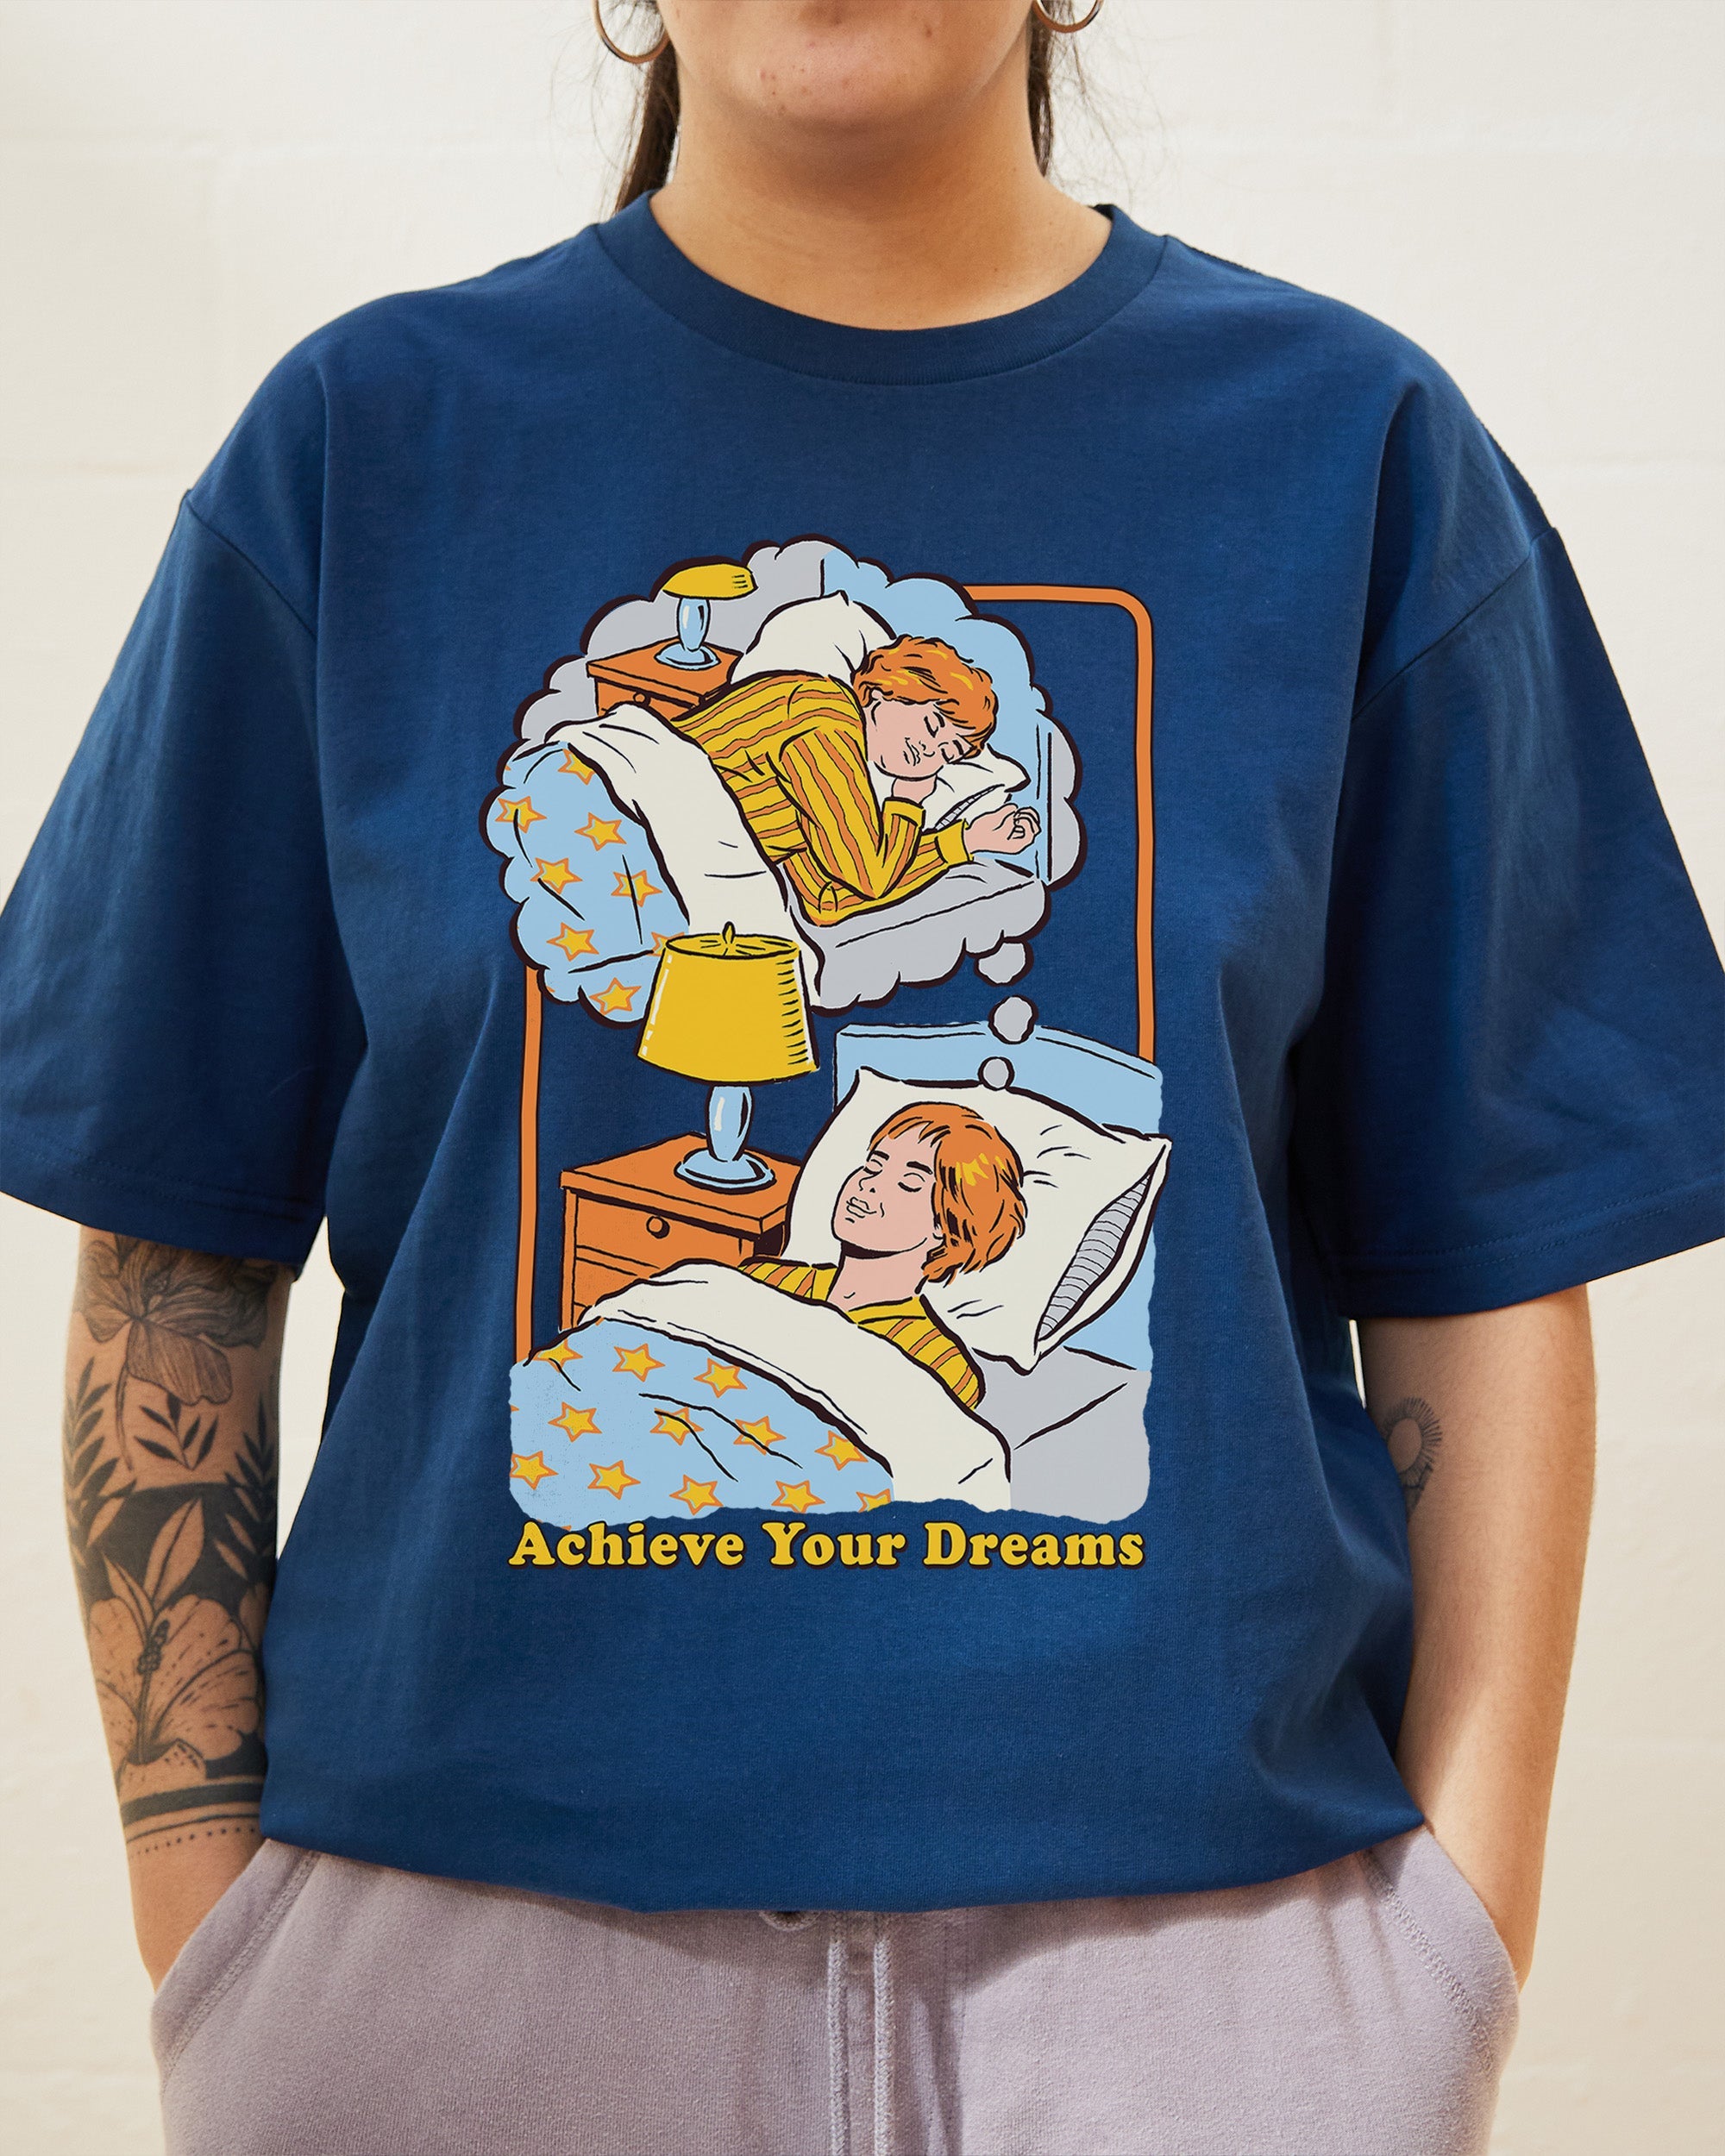 Achieve Your Dreams T-Shirt Australia Online Navy